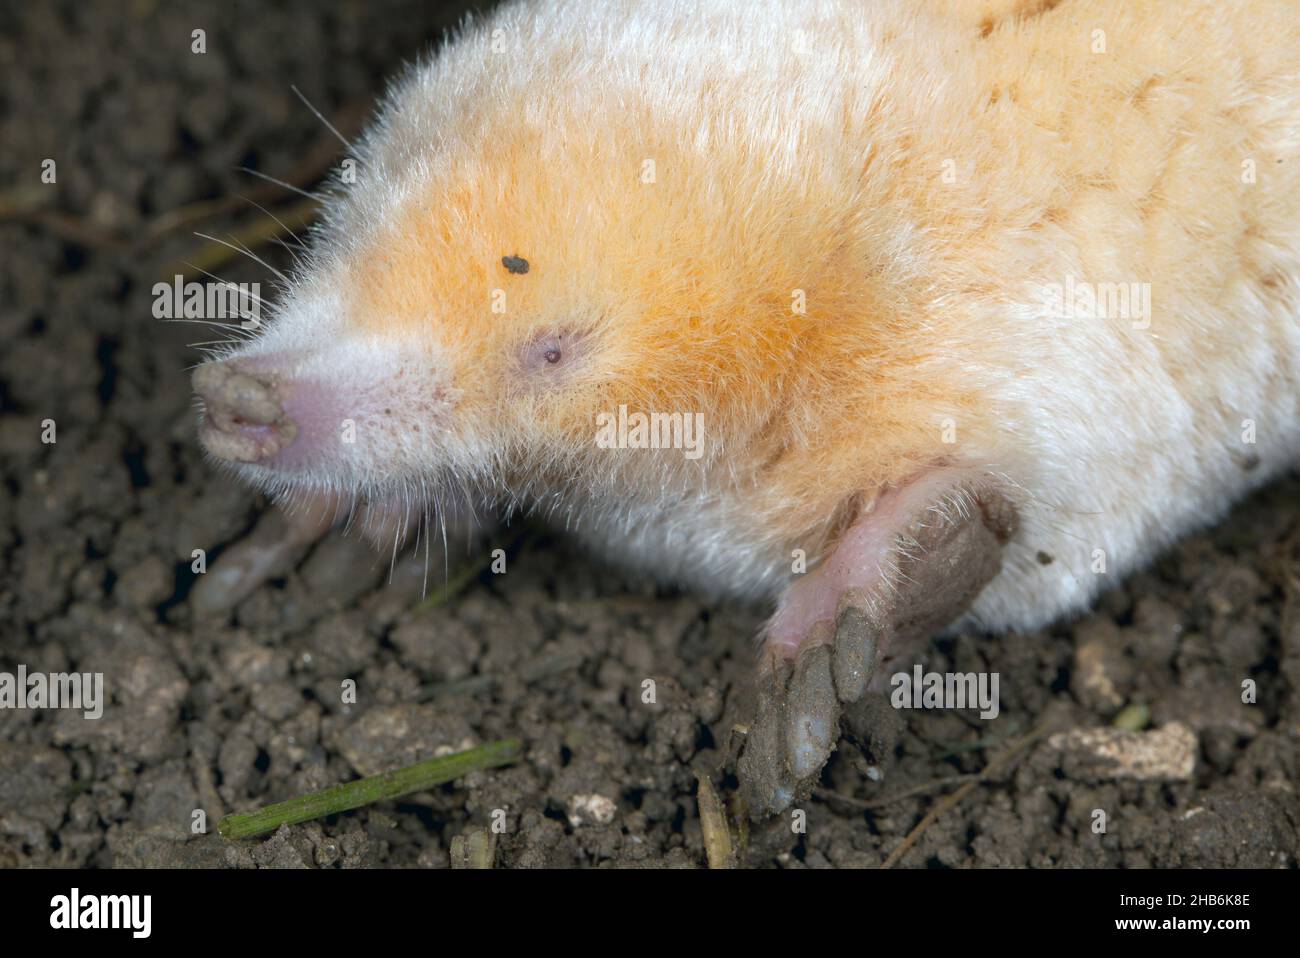 Mole europee, mole comuni, mole settentrionali (Talpa europaea), albino, ritratto , Germania Foto Stock